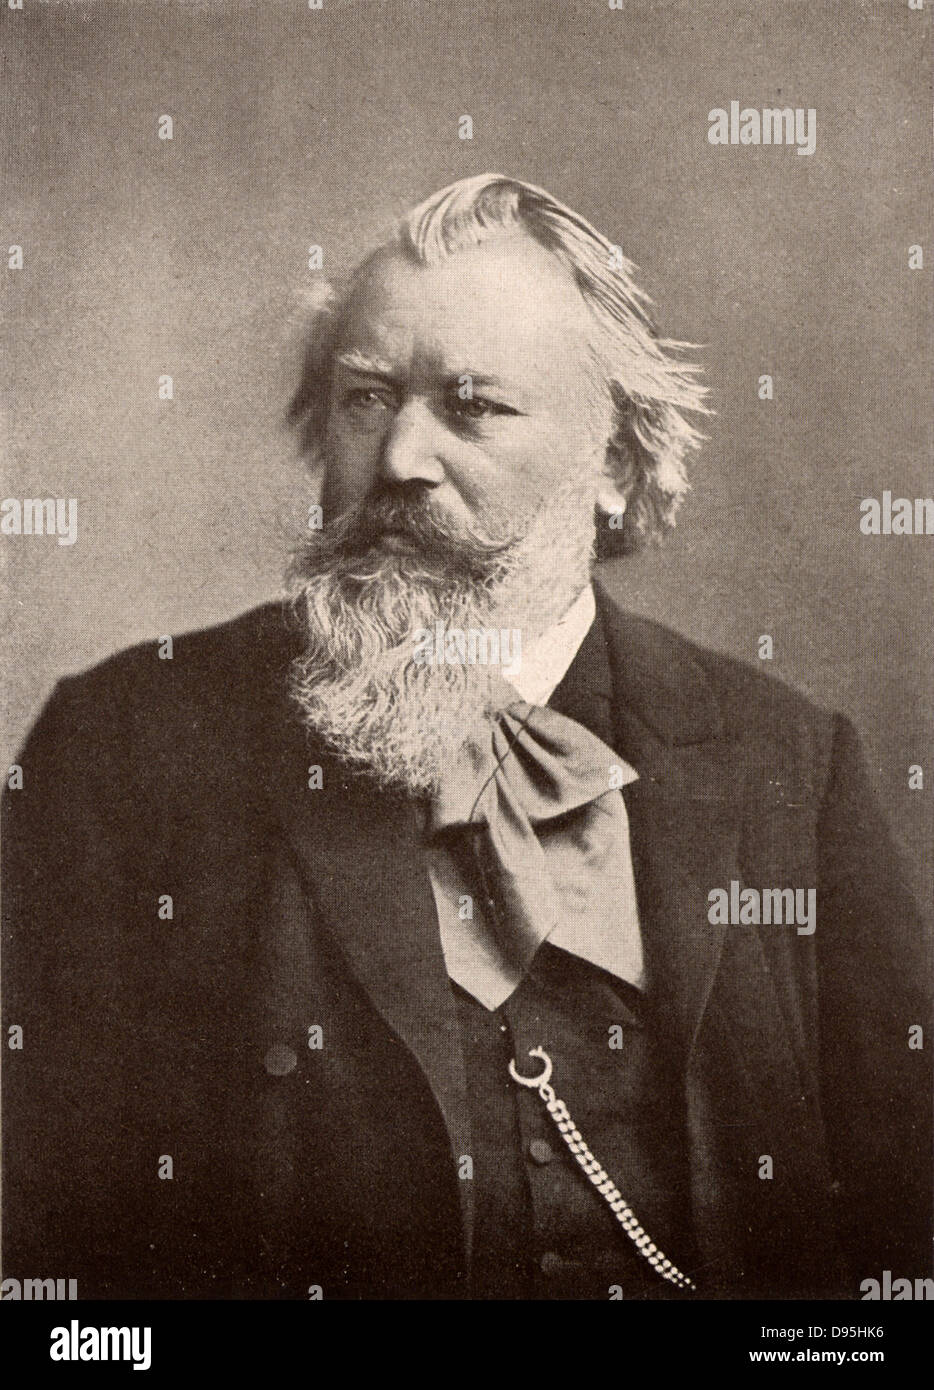 Deutschen Komponisten Johannes Brahms (1833-1897). Nach einem Foto. Halbton. Stockfoto